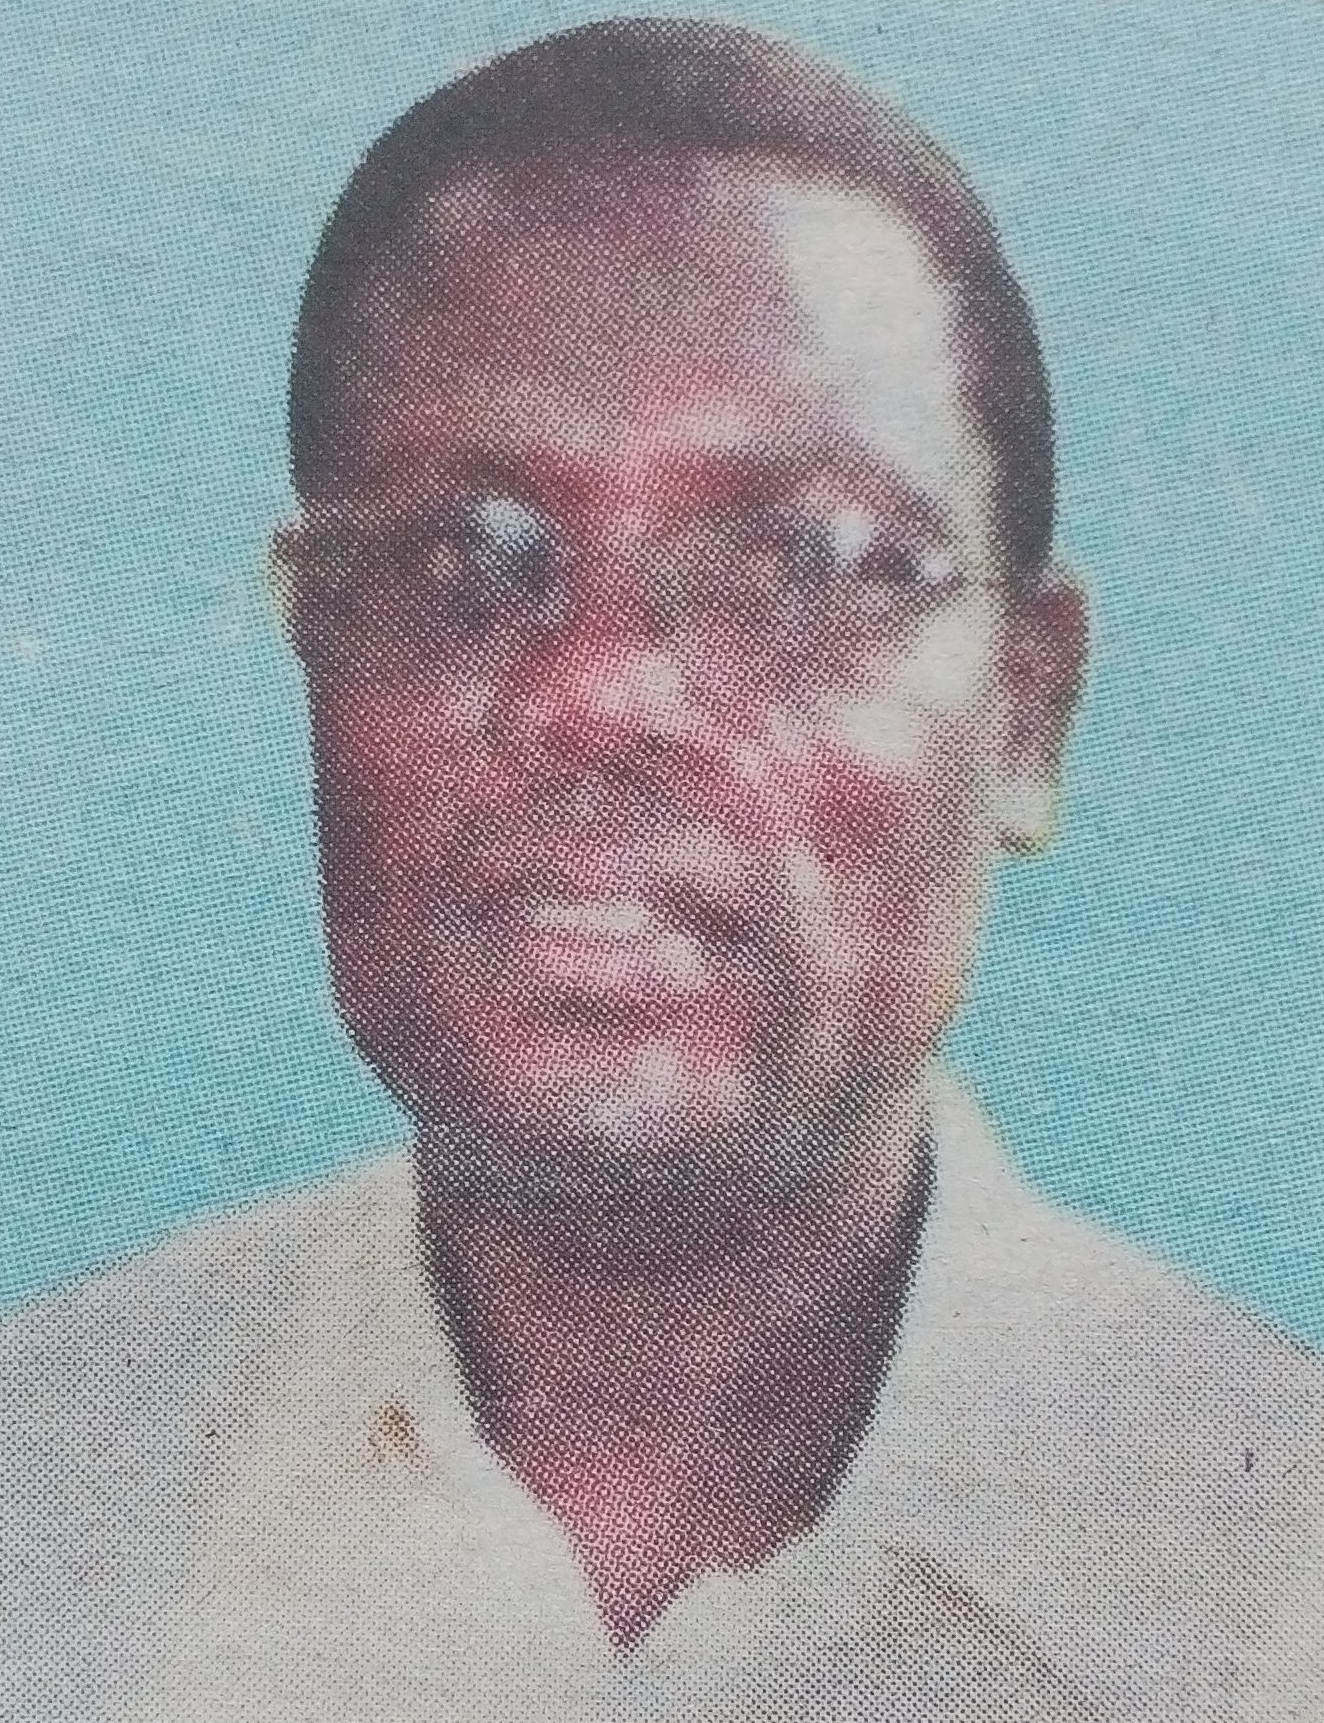 Obituary Image of Milton Ouru Manguro